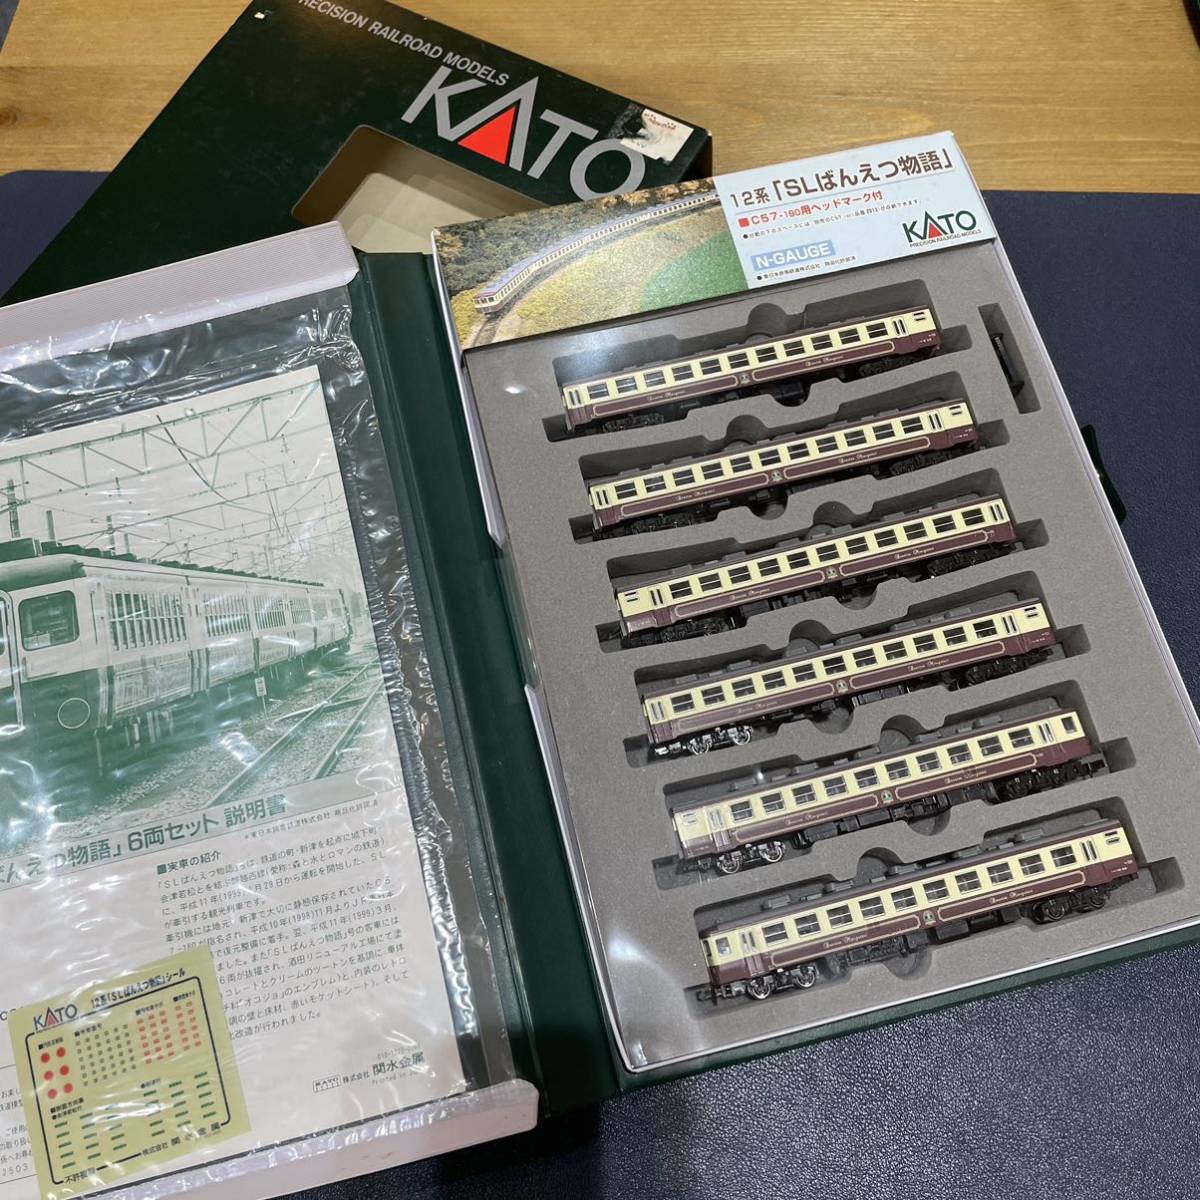 【点灯確認済み】KATO 10-403 12系 SLばんえつ物語 Nゲージ 鉄道模型 _画像1